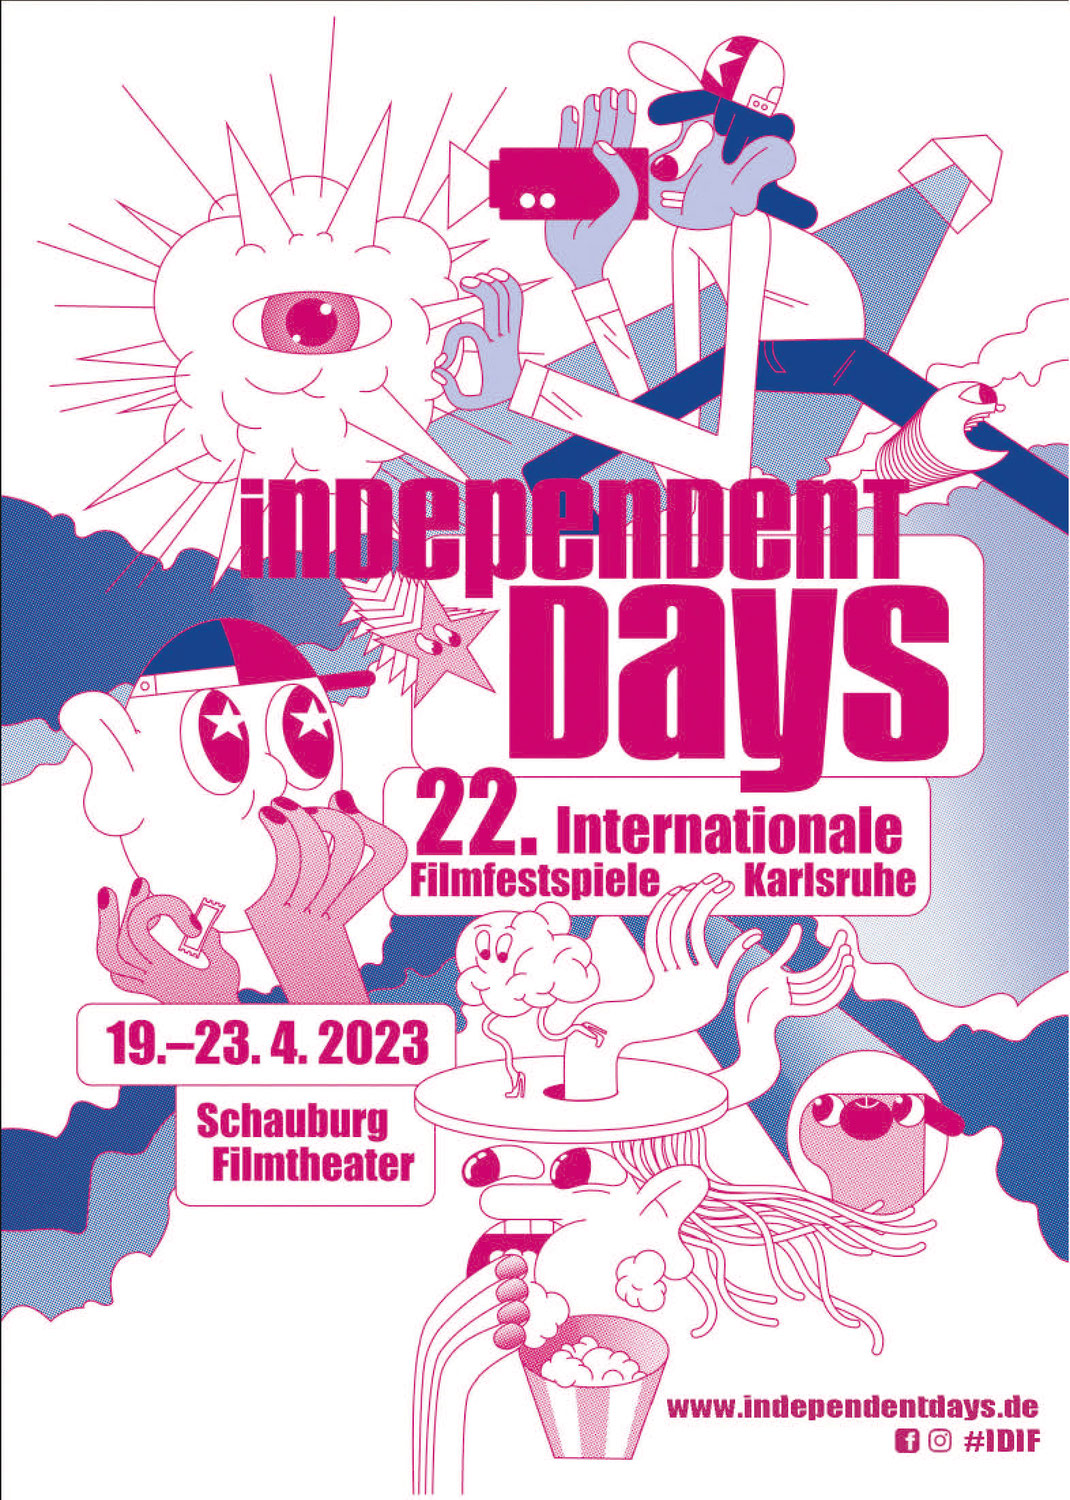 INDEPENDENT DAYS: Programm mit 123 Filmen aus 36 Ländern und einem spannenden Rahmenprogramm veröffentlicht